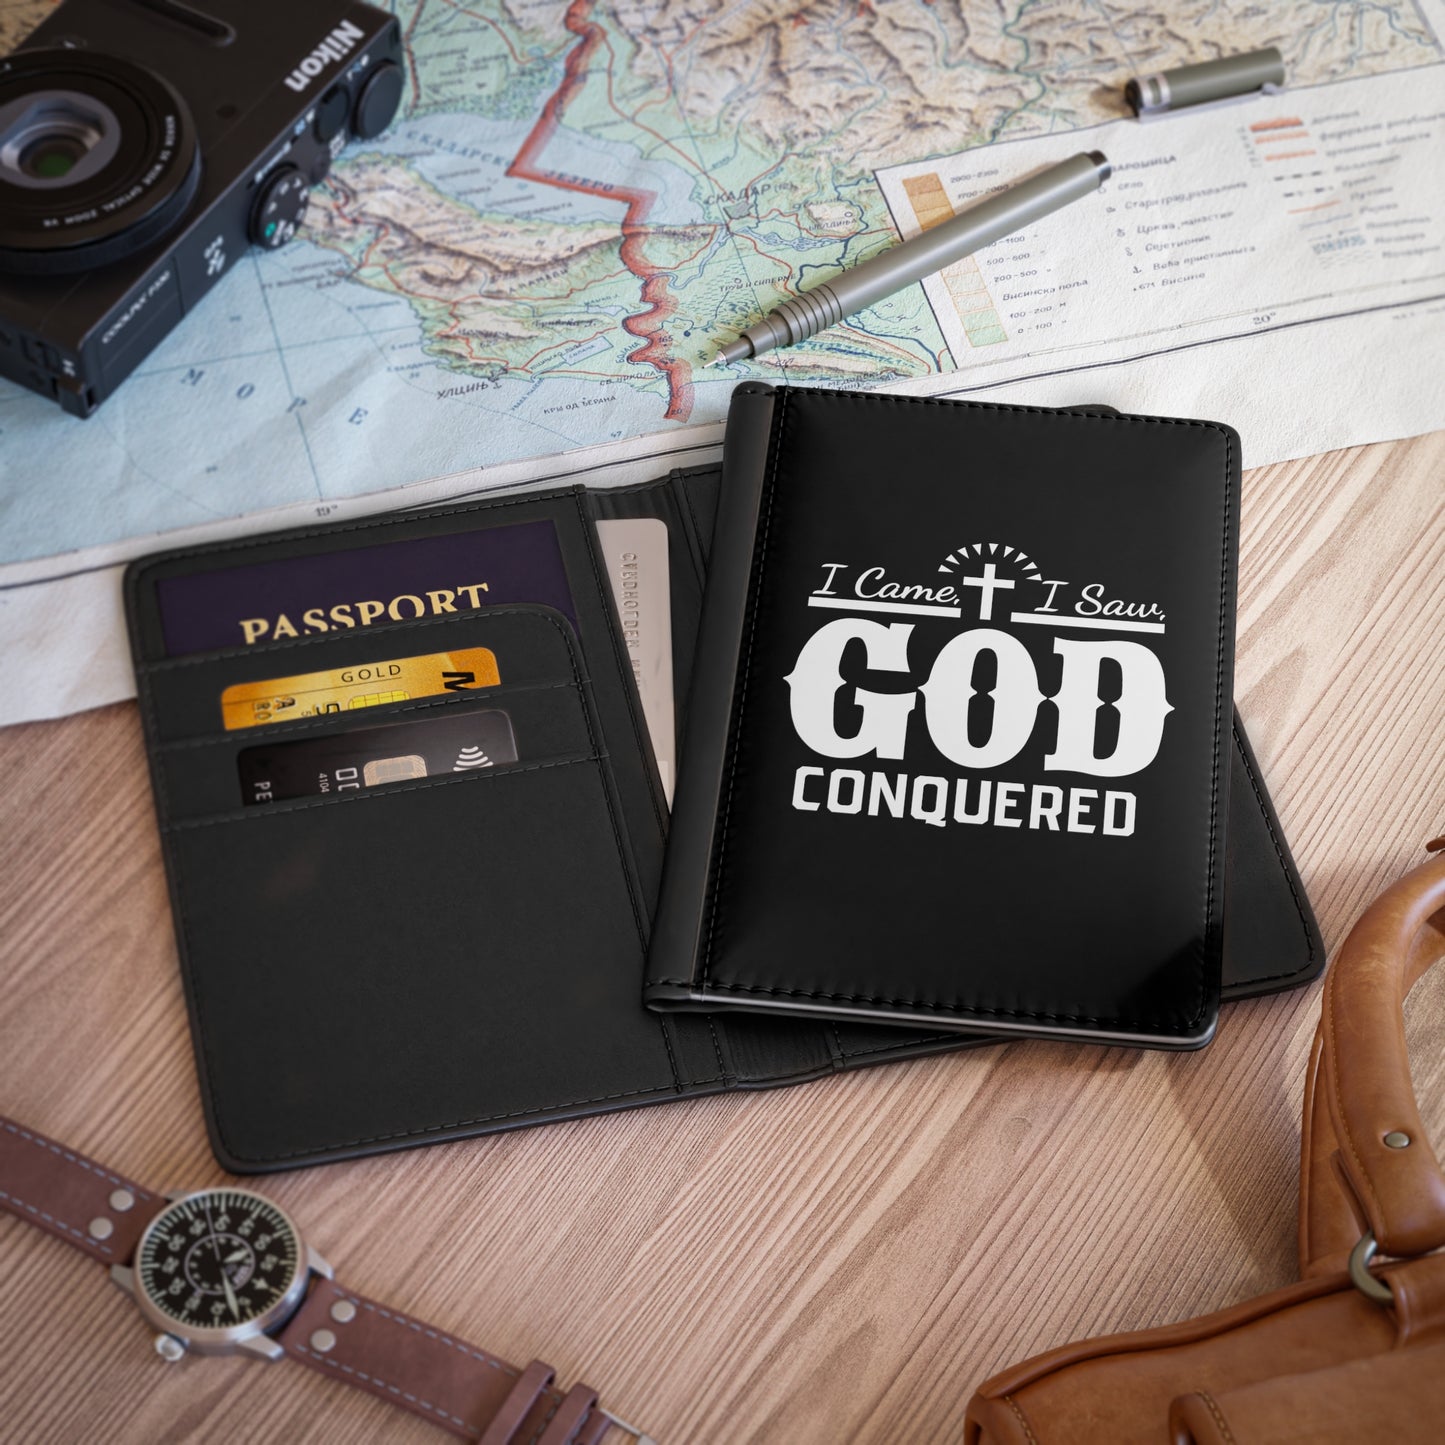 I came, I saw, God Conquered Passport Cover